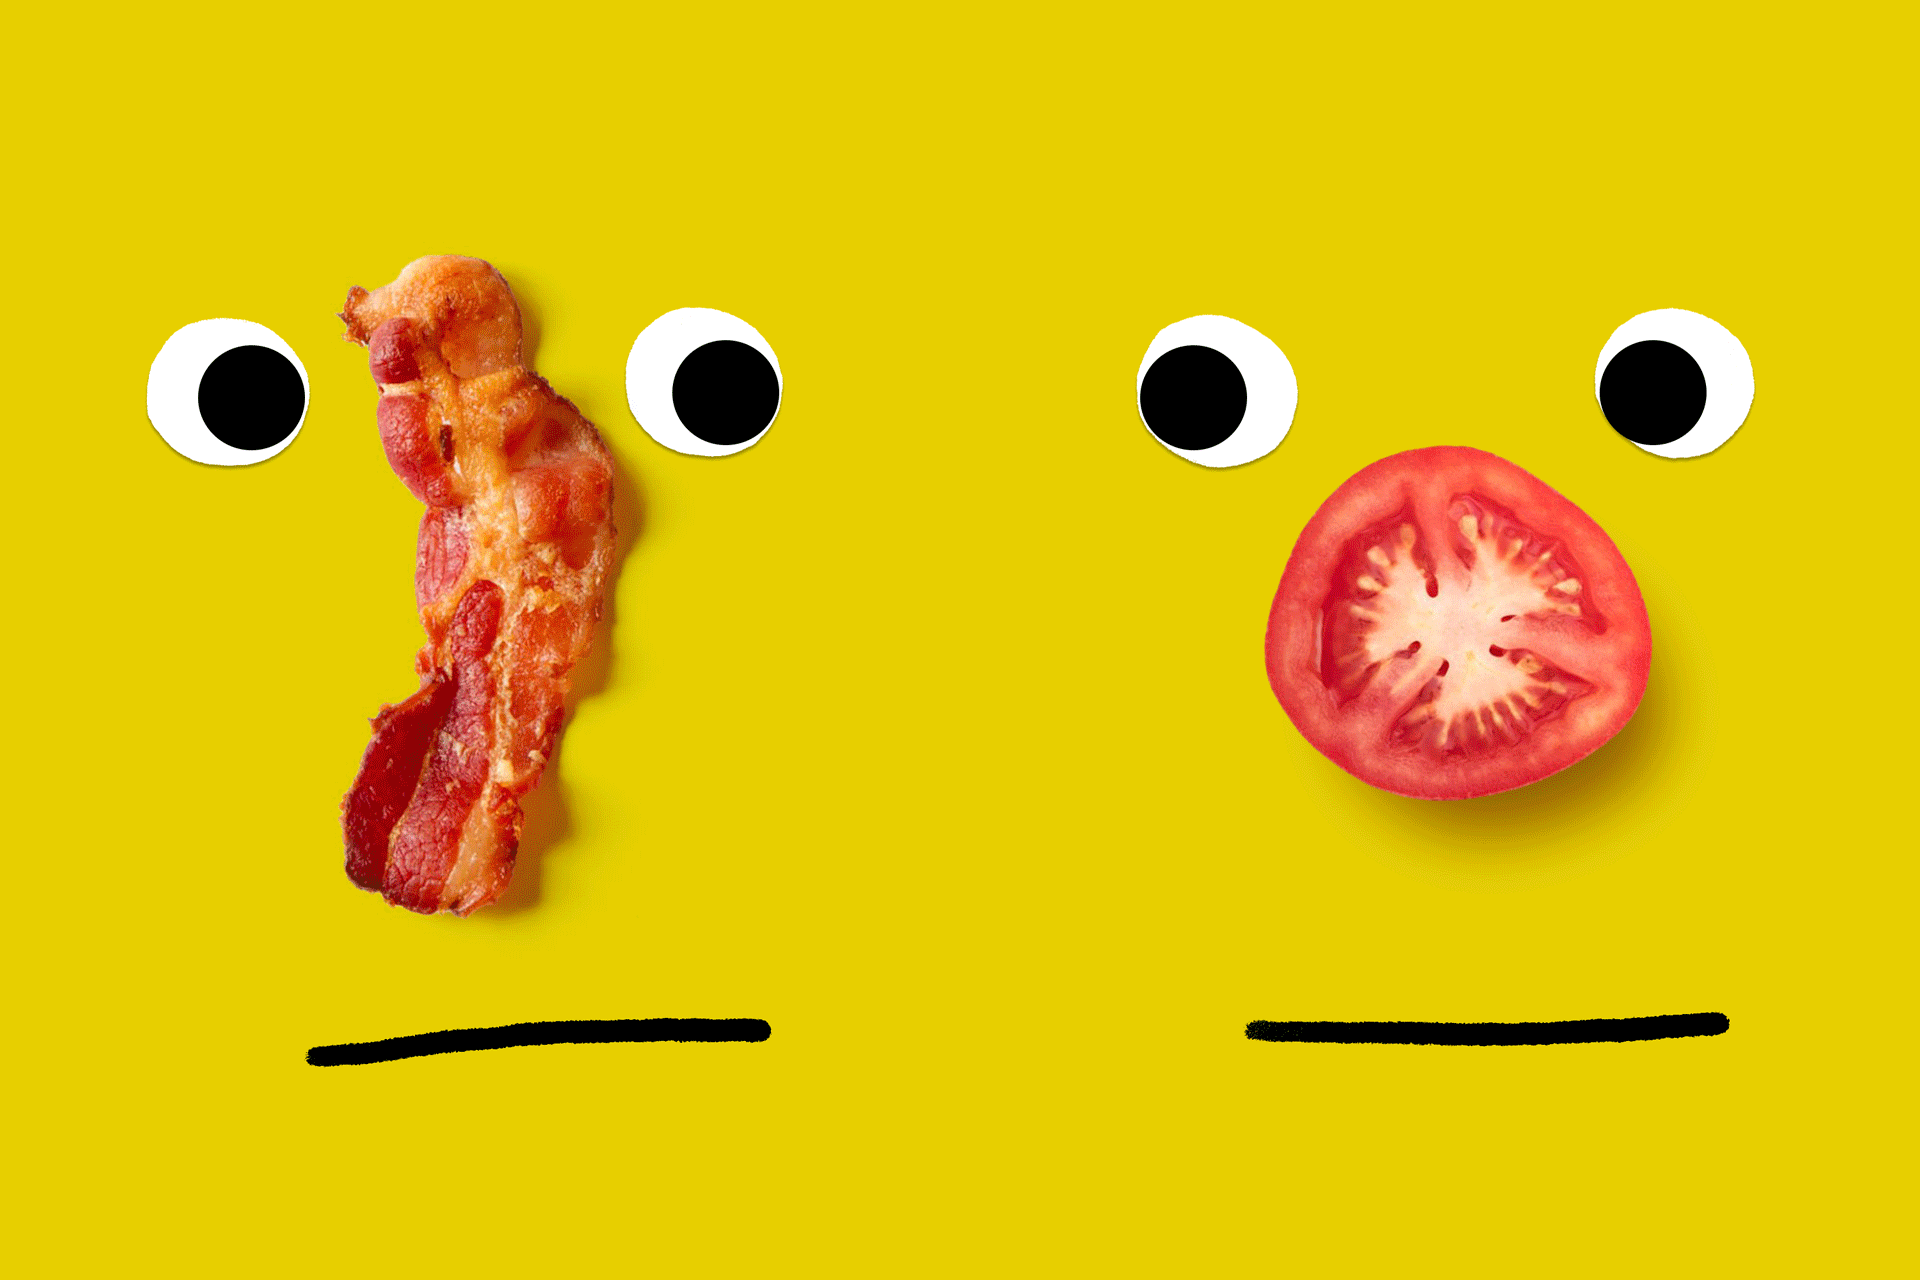 Illustration photo de deux visages comiques avec des nez animés formés à partir de viande et d'aliments végétariens